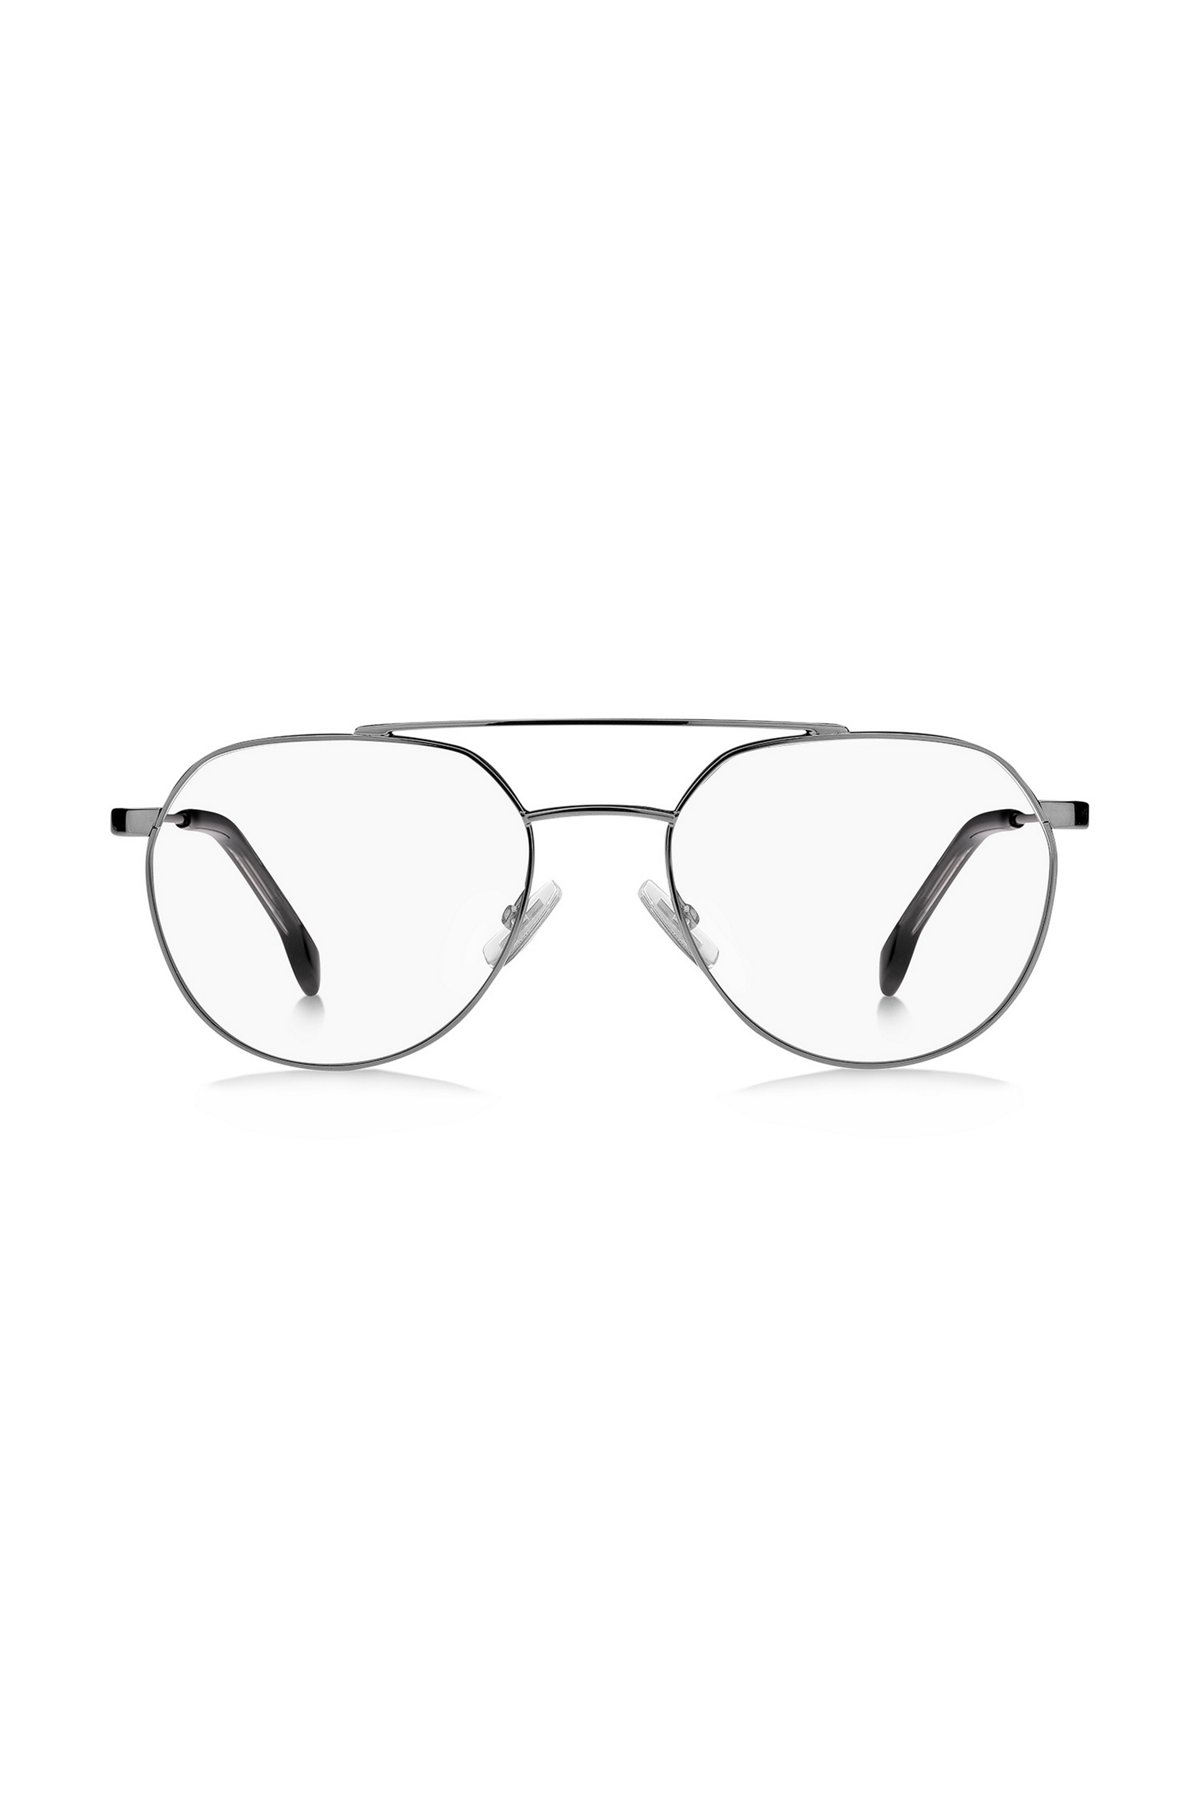 Brillenfassung mit Doppelsteg und Aussparung an den Bügeln, Silber